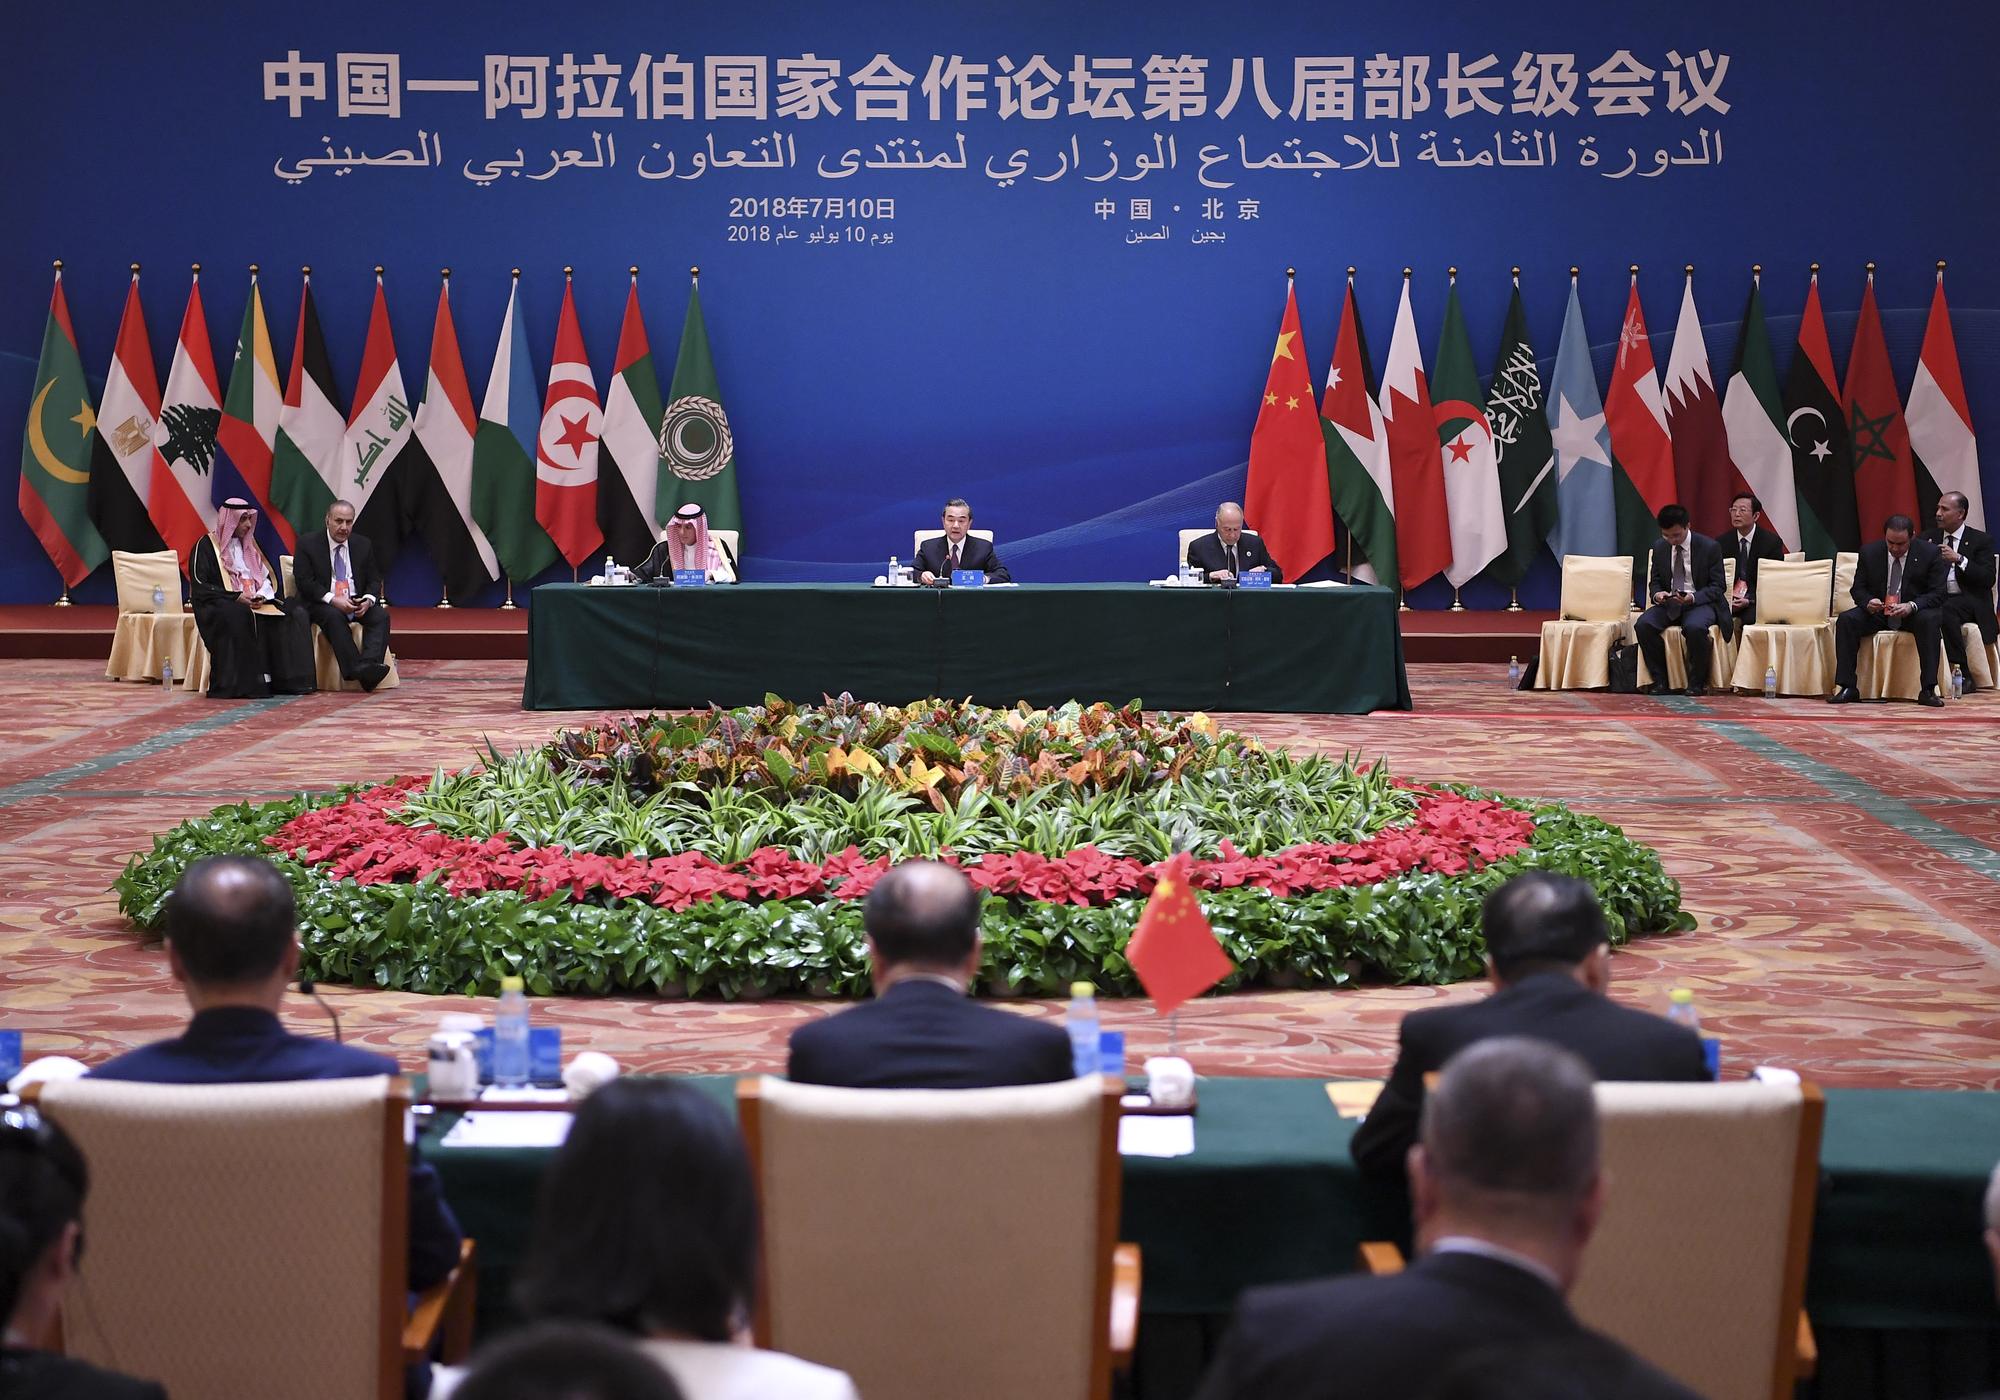 Le ministre des Affaires étrangères Wang Yi (au centre) et le ministre saoudien des Affaires étrangères Adel bin Ahmed al-Jubeir (au centre à gauche) lors du Forum de coopération sino-arabe (CASCF) à Pékin, 10 juillet 2018. [Xinhua/AFP - Yan Yan]